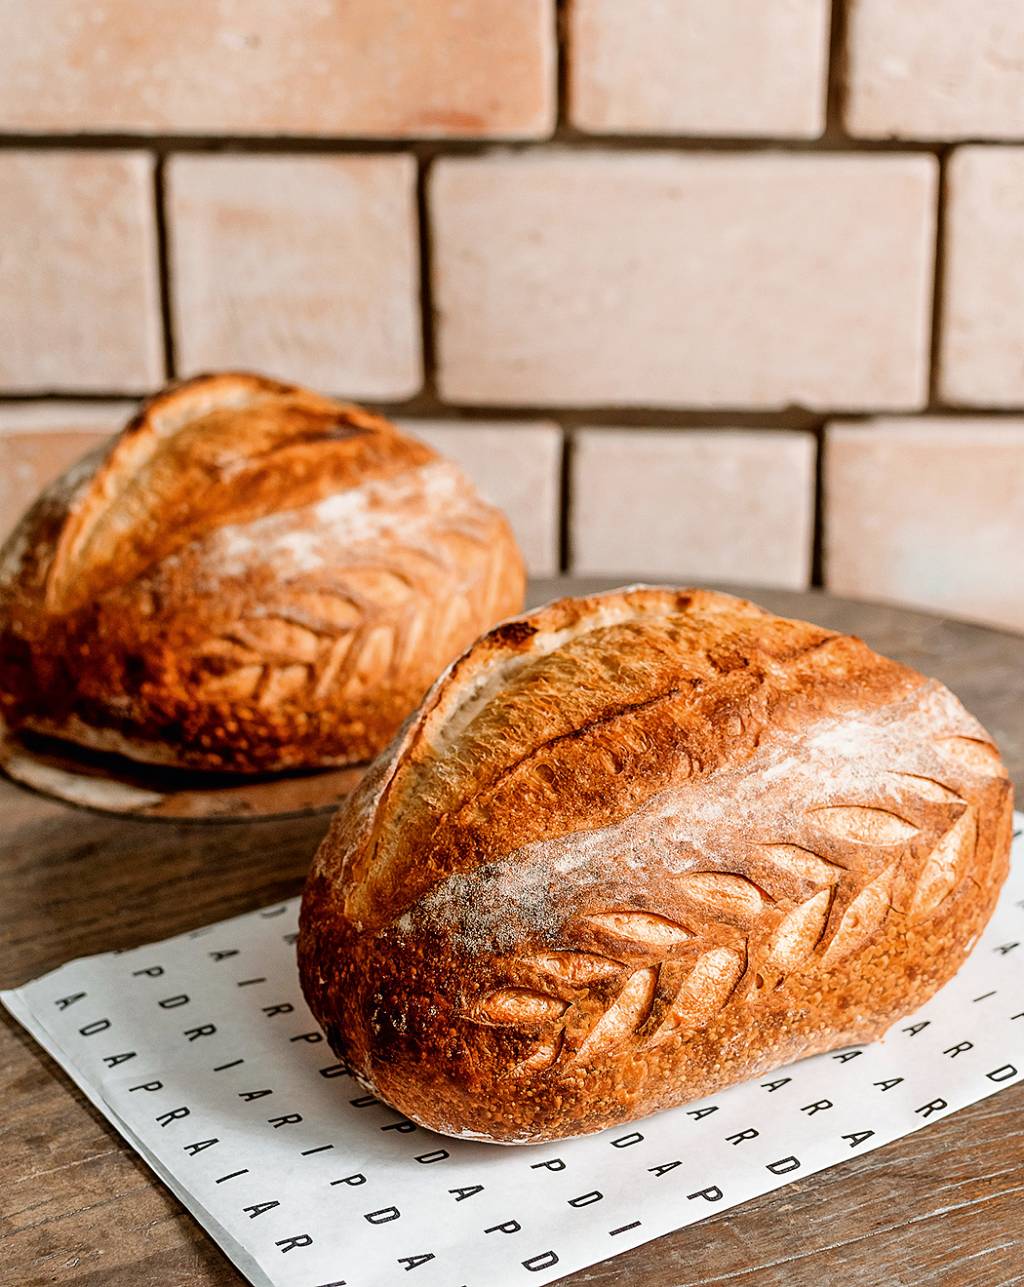 A imagem mostra dois pães de fermentação natural